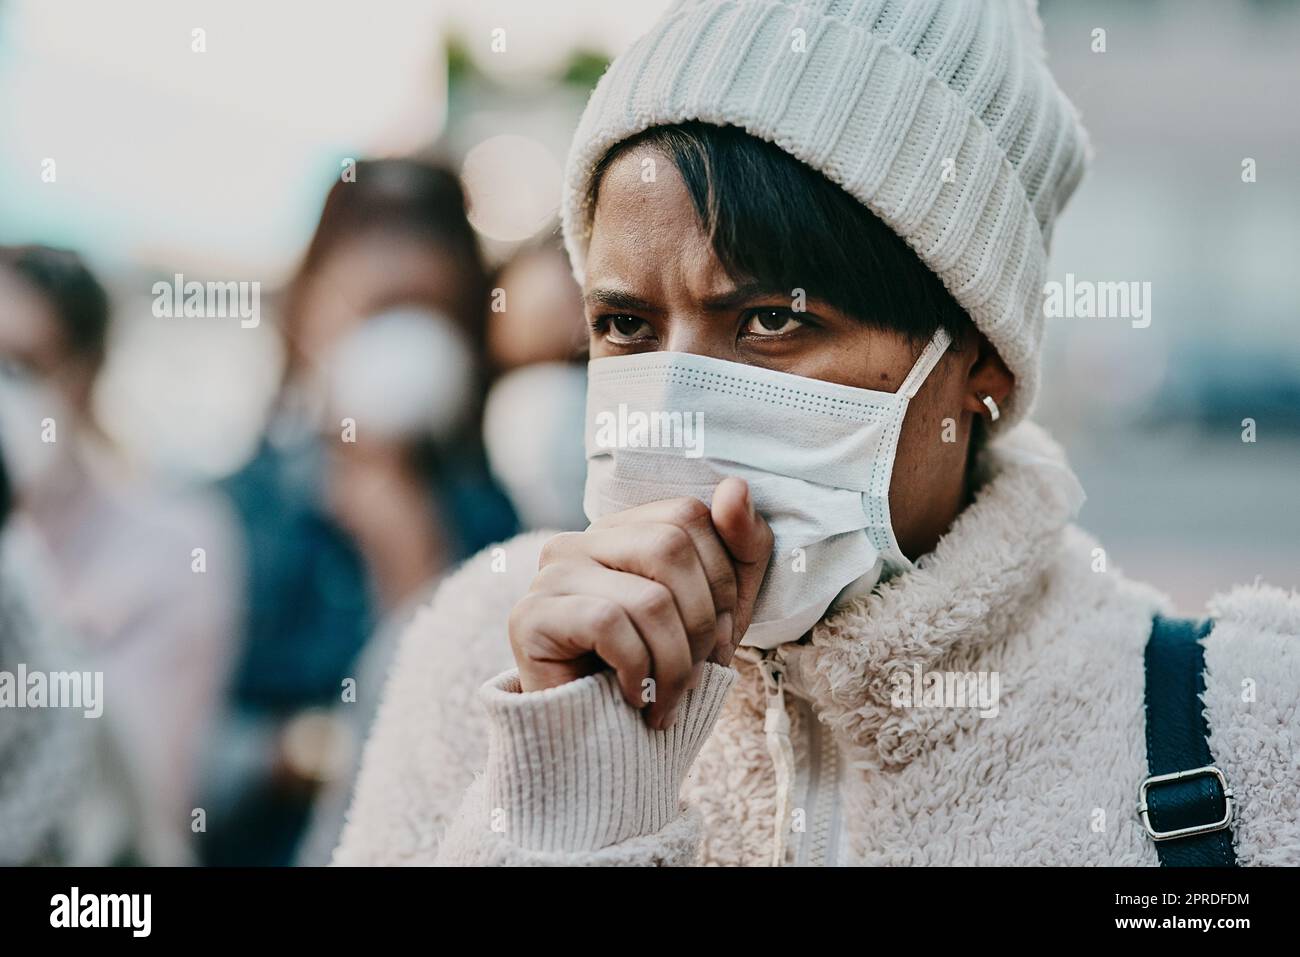 Covid, krank und trägt eine Maske in der Öffentlichkeit, um infektionsfrei zu sein. Gesundheit, Wellness und Touristensicherheit. Schutz vor Menschenmassen, Viren und Grippe für internationale oder lokale Reisen und für die Arbeit im Freien. Stockfoto